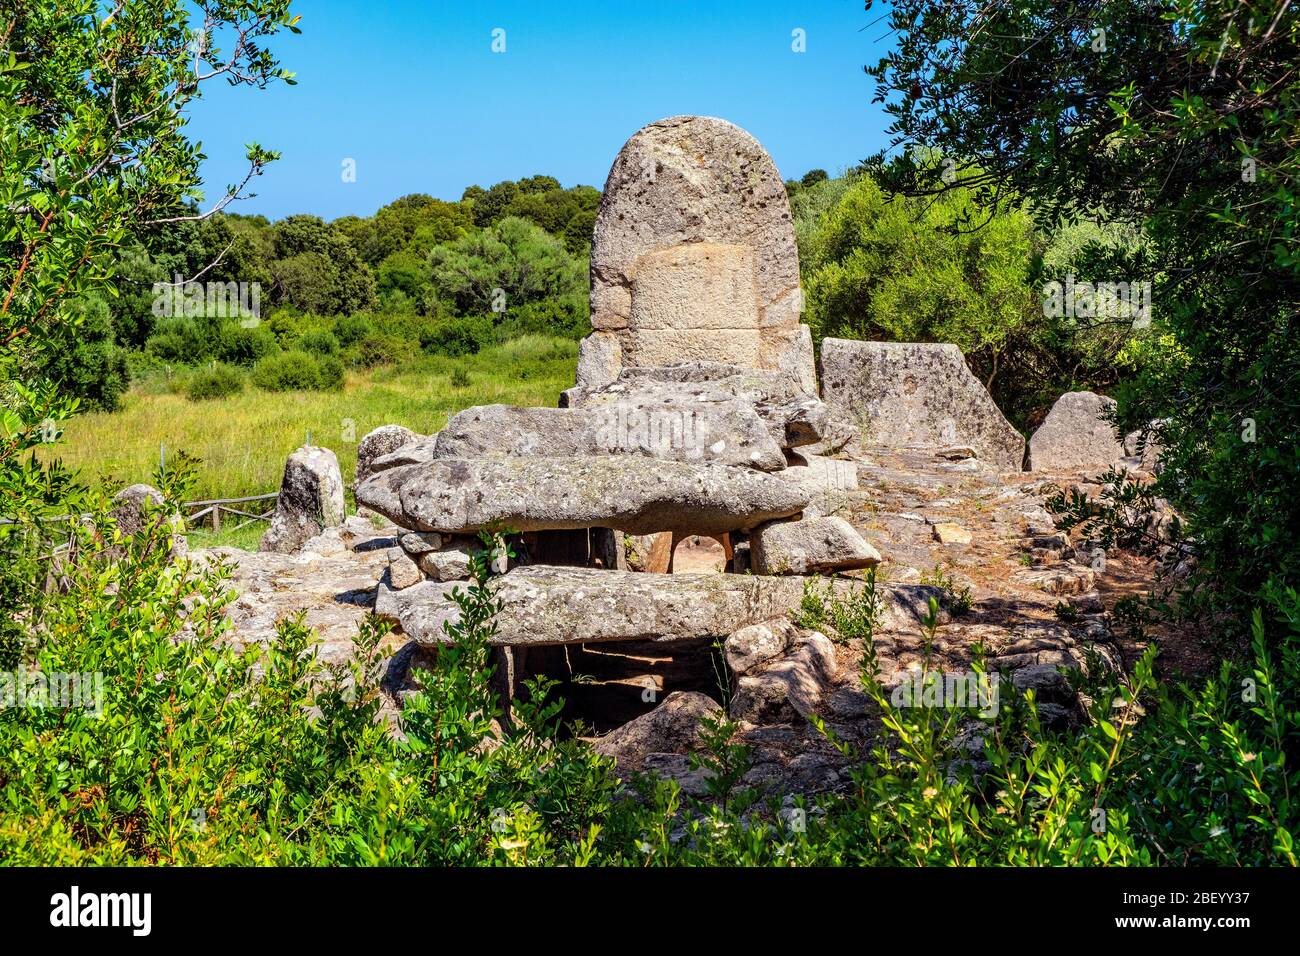 Arzachena, Sardaigne / Italie - 2019/07/19: Ruines archéologiques de nécropole Nuragique Giants Tomb de Codu Vecchiu - Tomba di Giganti Coddu Vecchiu - W Banque D'Images